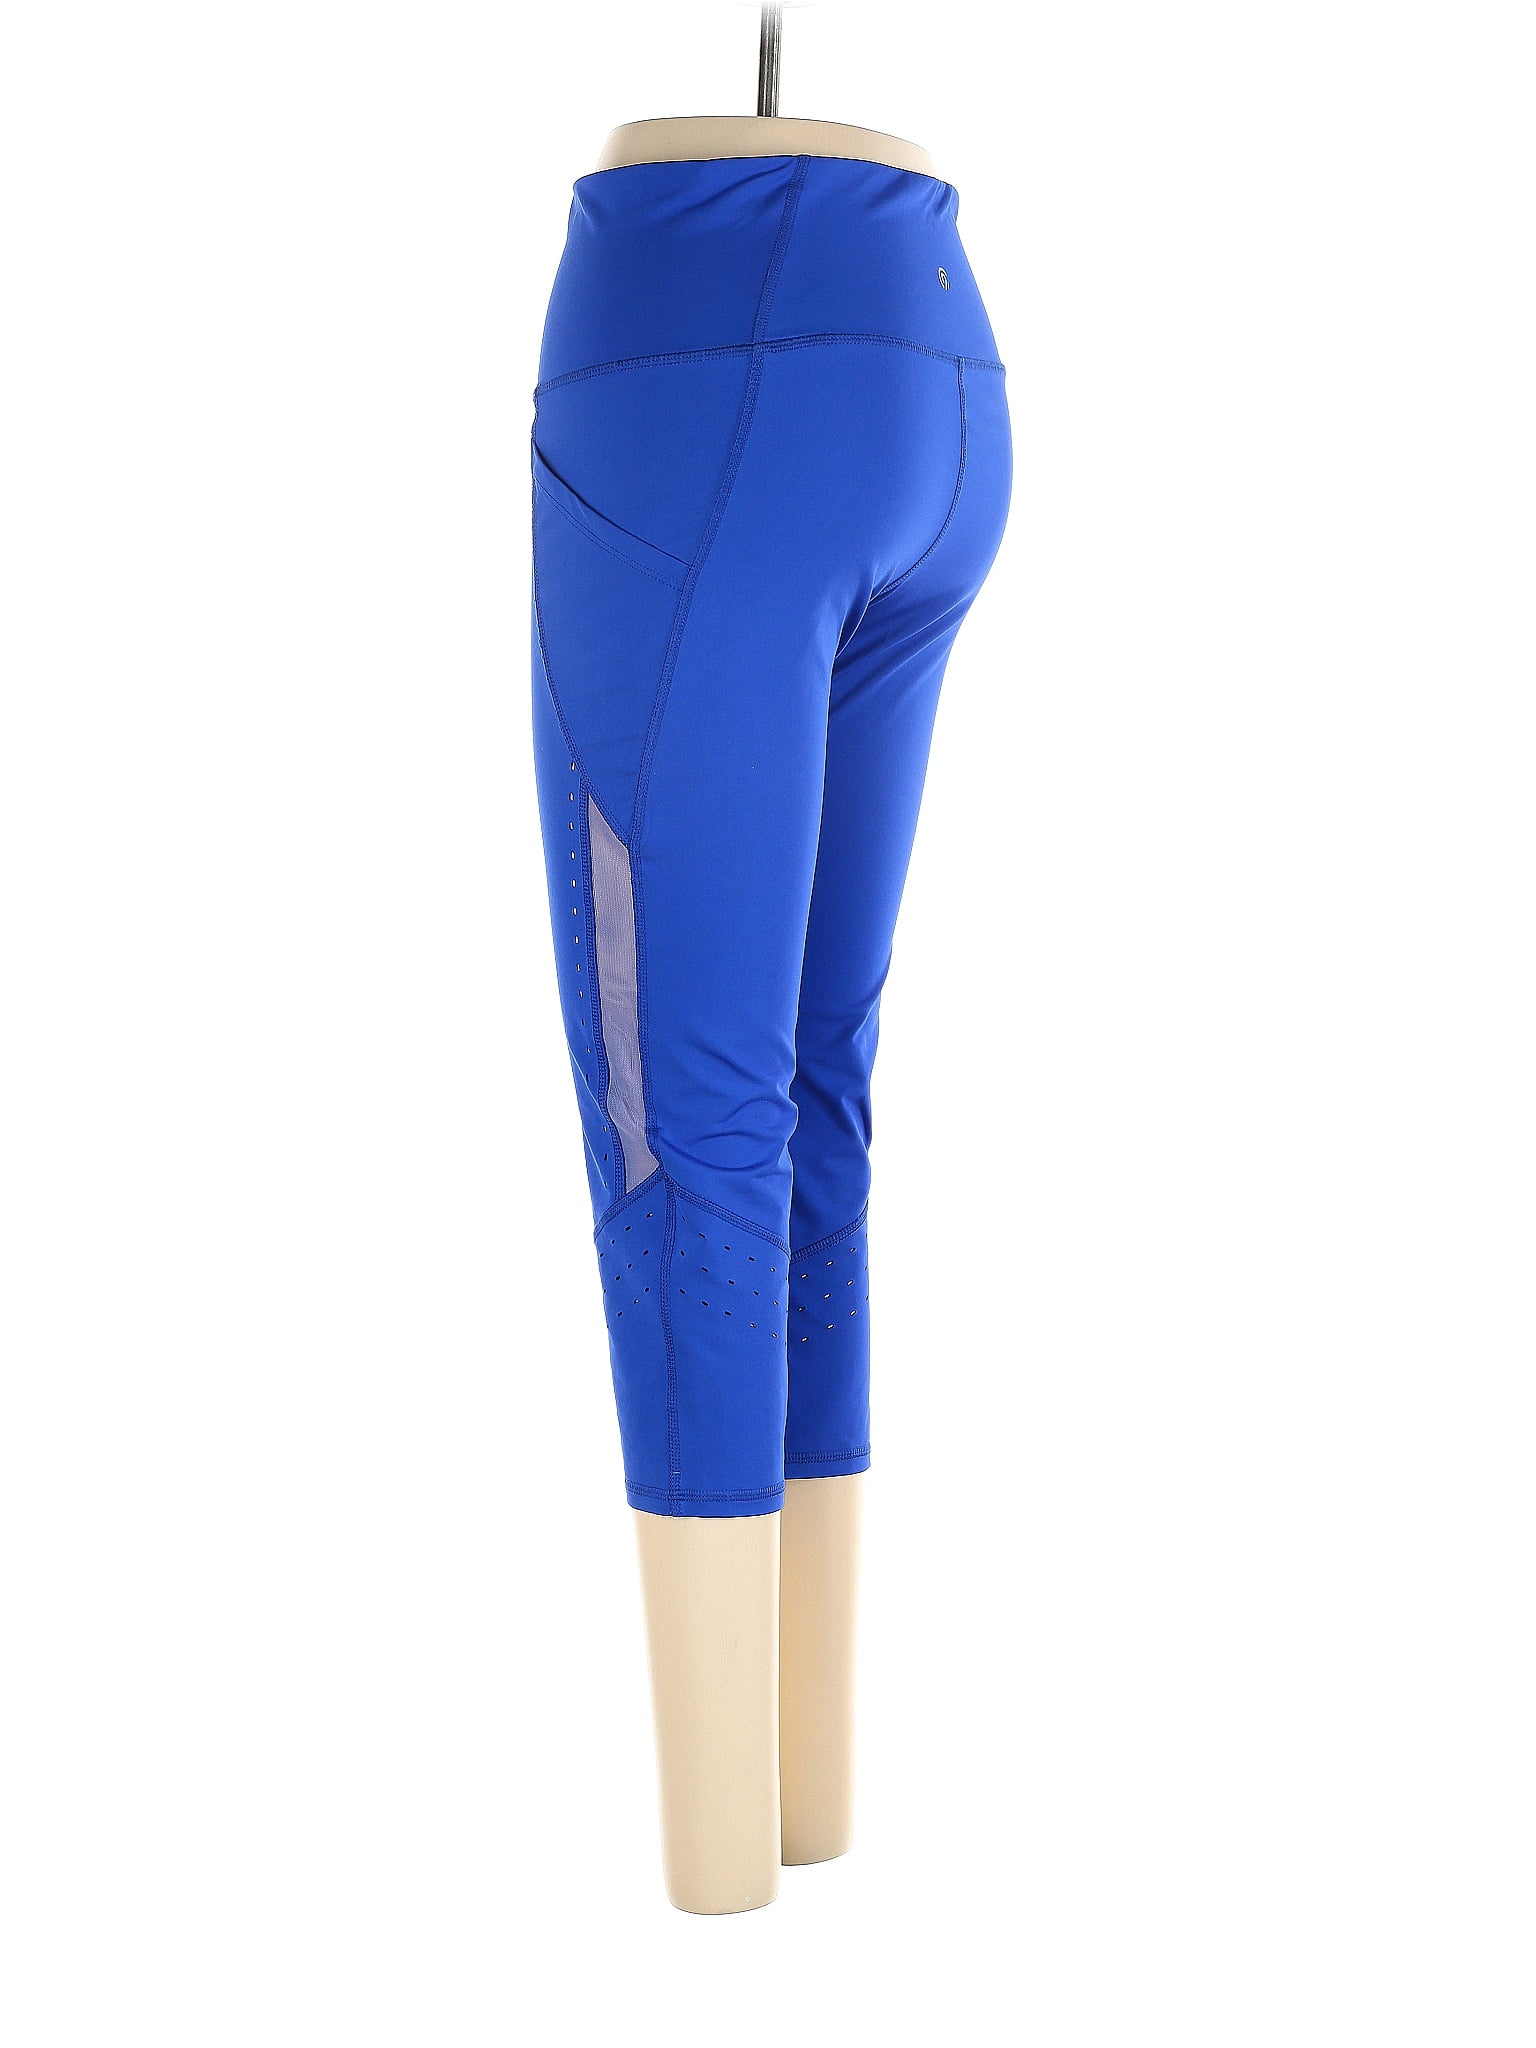 RBX Blue Active Pants Size M - 74% off